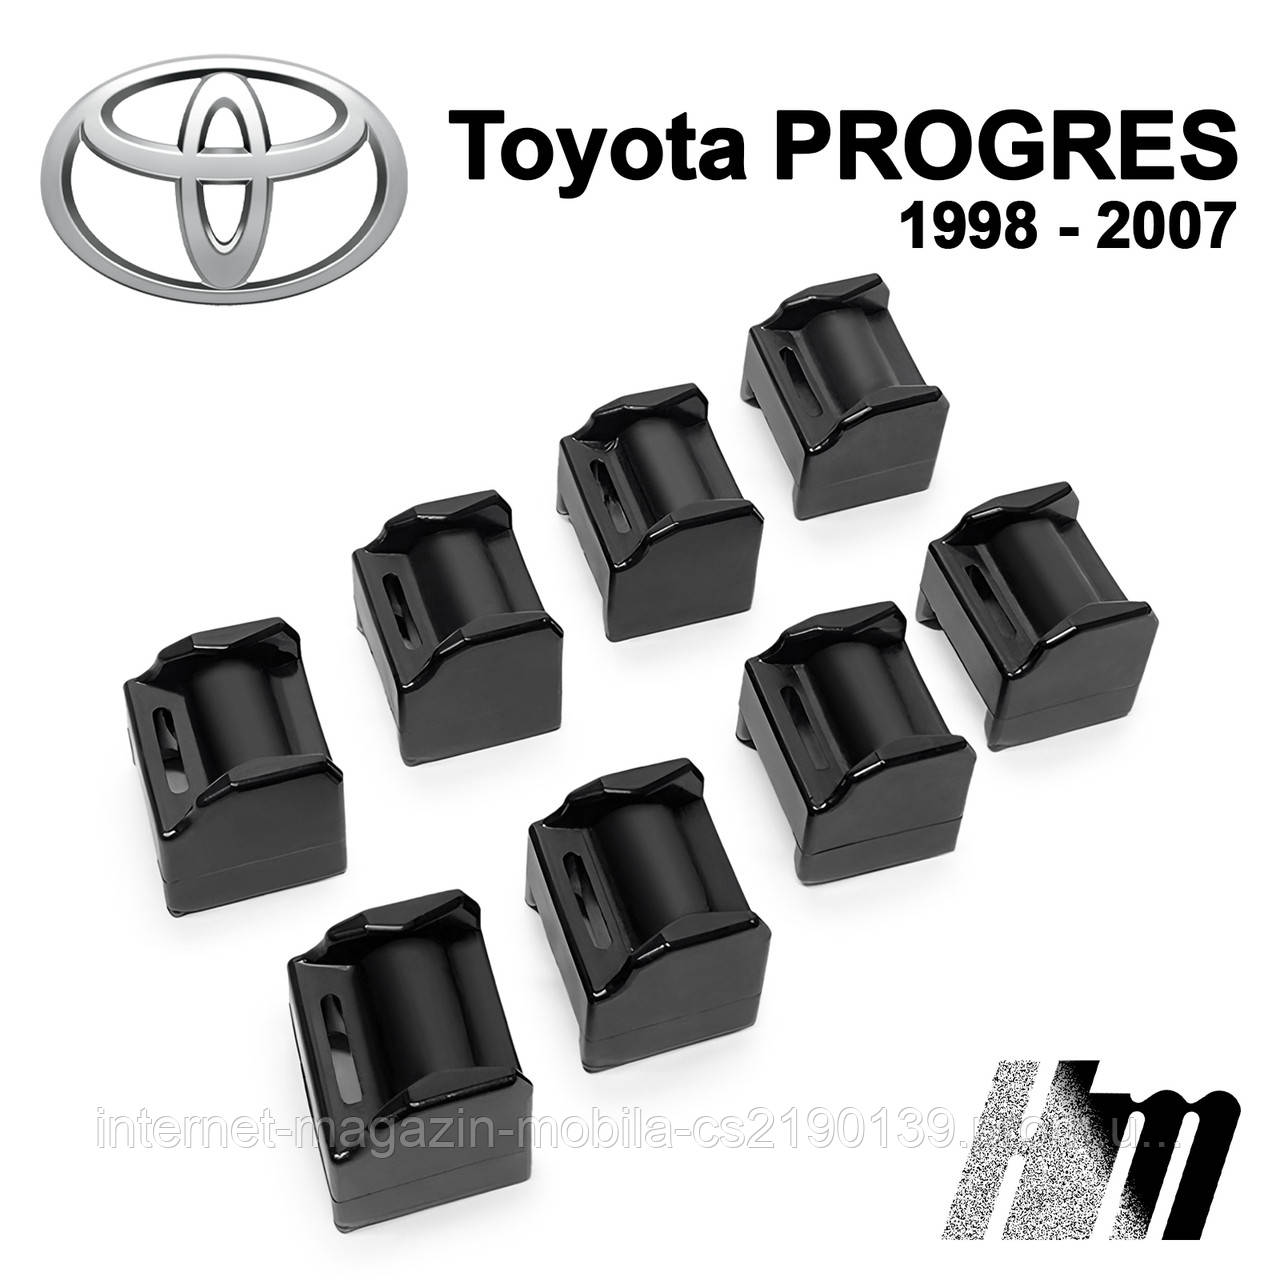 Ремкомплект обмежувача дверей Toyota PROGRES 1998 — 2007, фіксатори, вкладки, втулки, сухарі